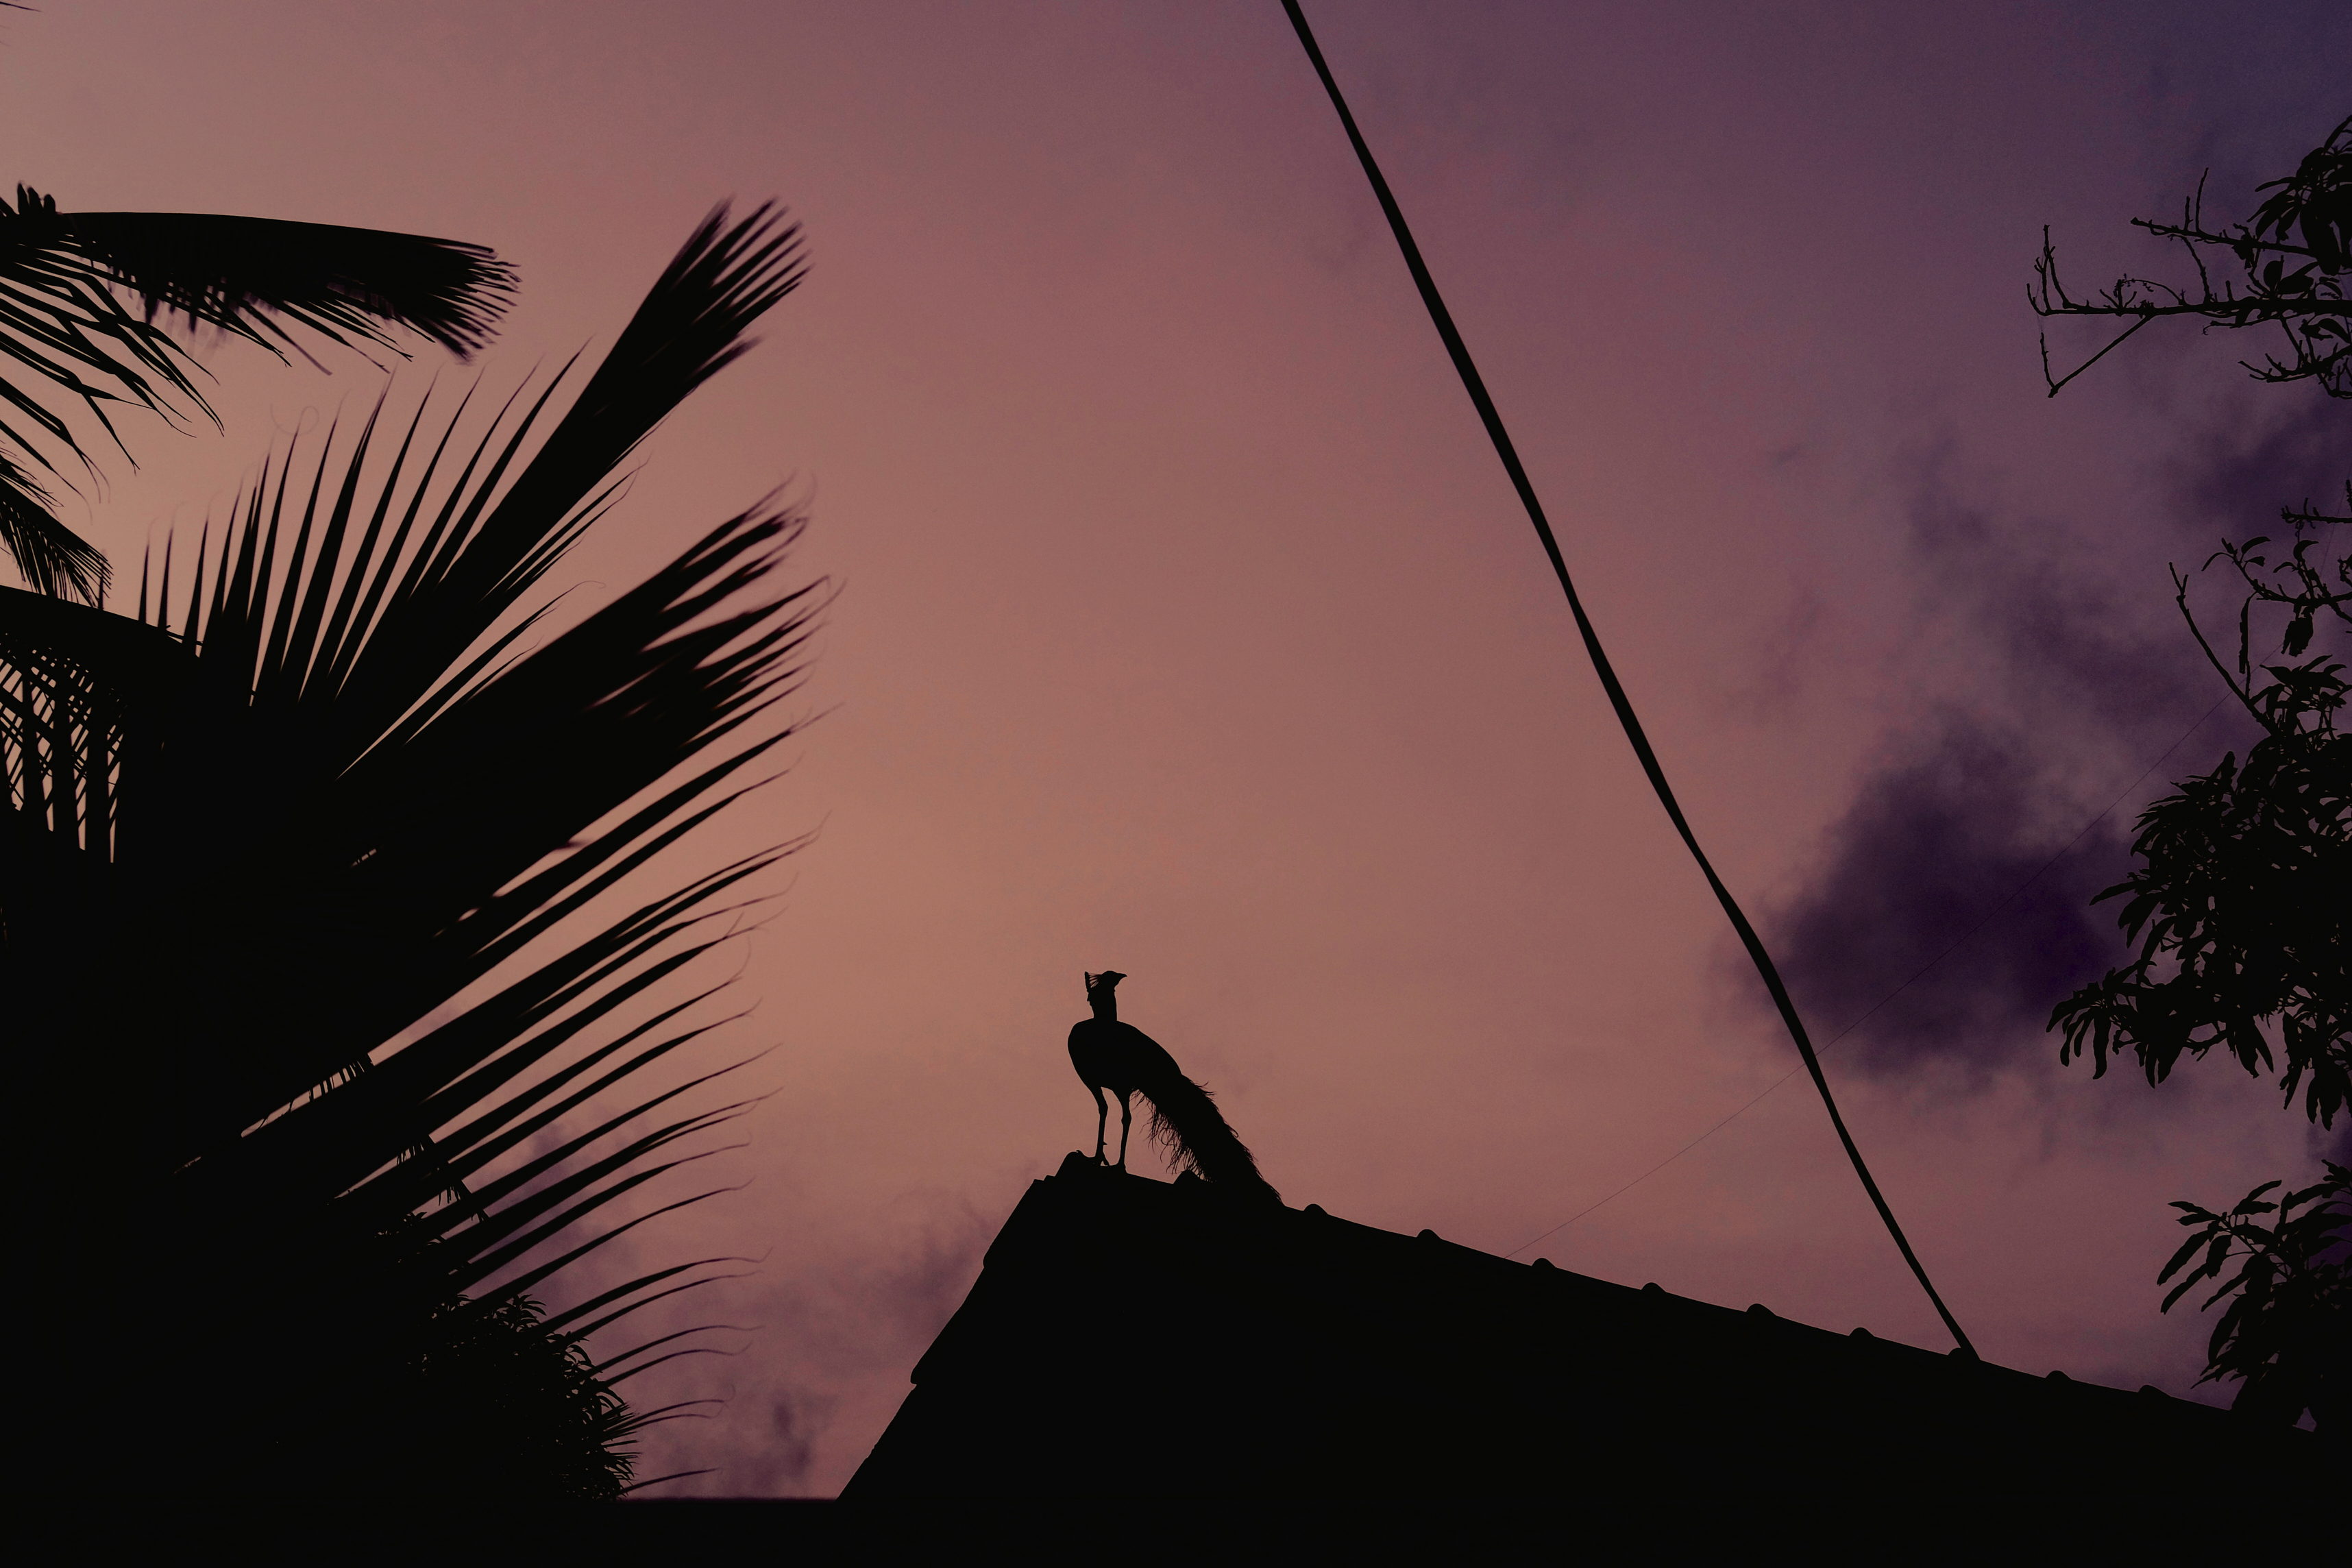 Sri Lanka, Mirissa, 2021-10-09. A peacock perched on a roof by a pink sky night. Photograph by Noemie de Bellaigue / Hans Lucas. 
Sri Lanka, Mirissa, 2021-10-09. Un paon perche sur un toit par un soir de ciel rose. Photographie par Noemie de Bellaigue / Hans Lucas.